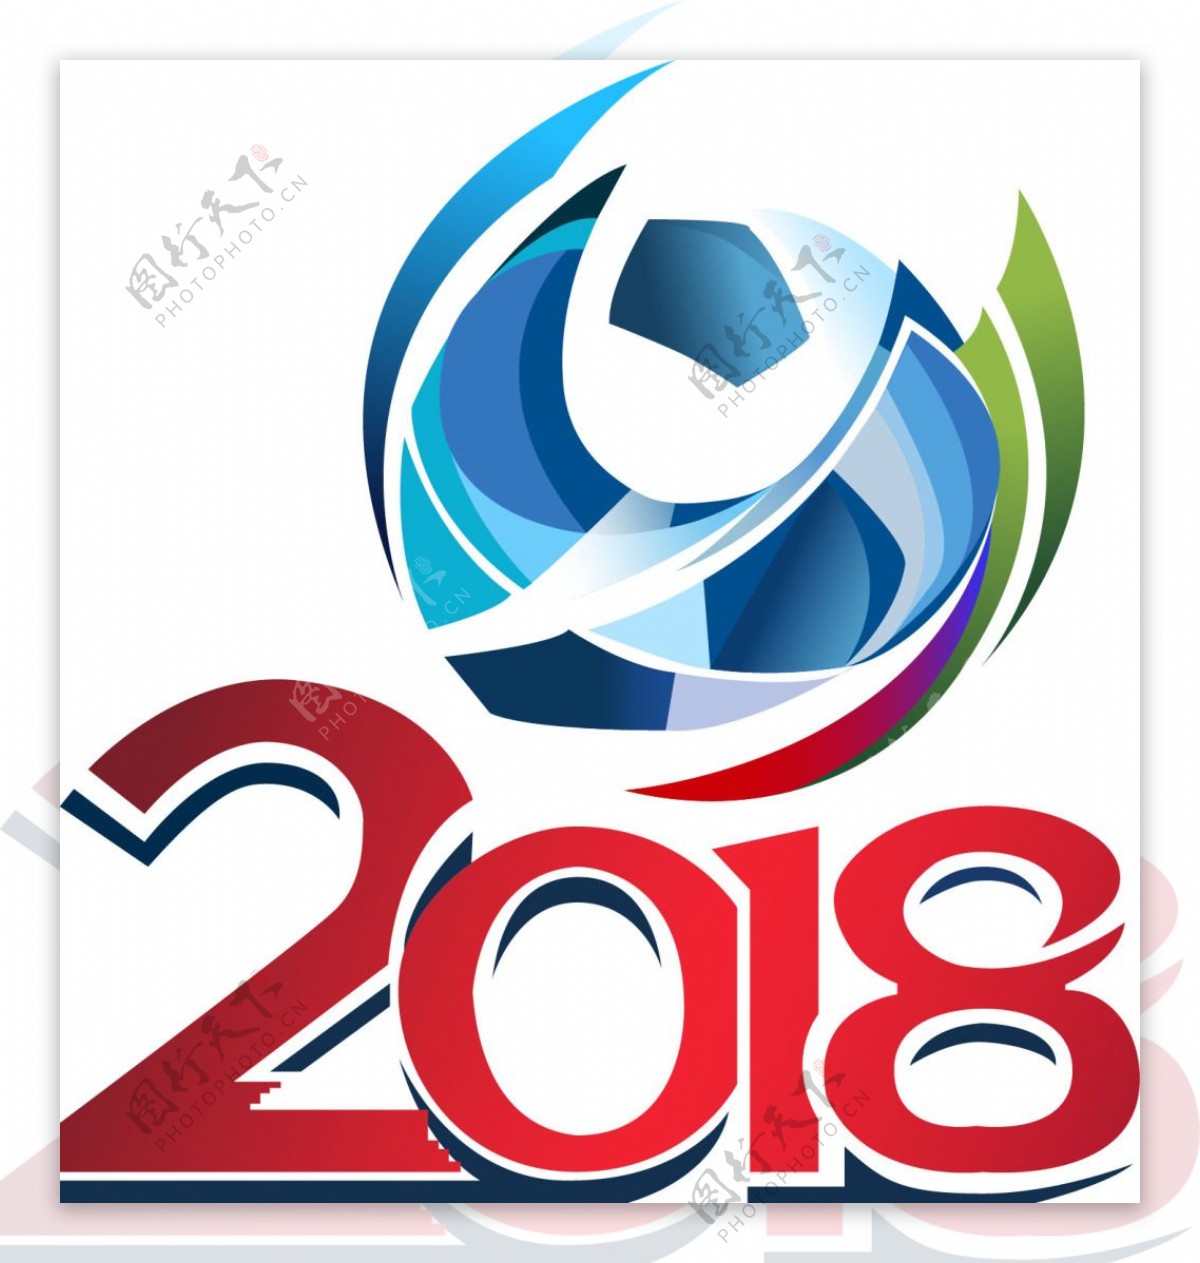 2018俄罗斯世界杯申办标志